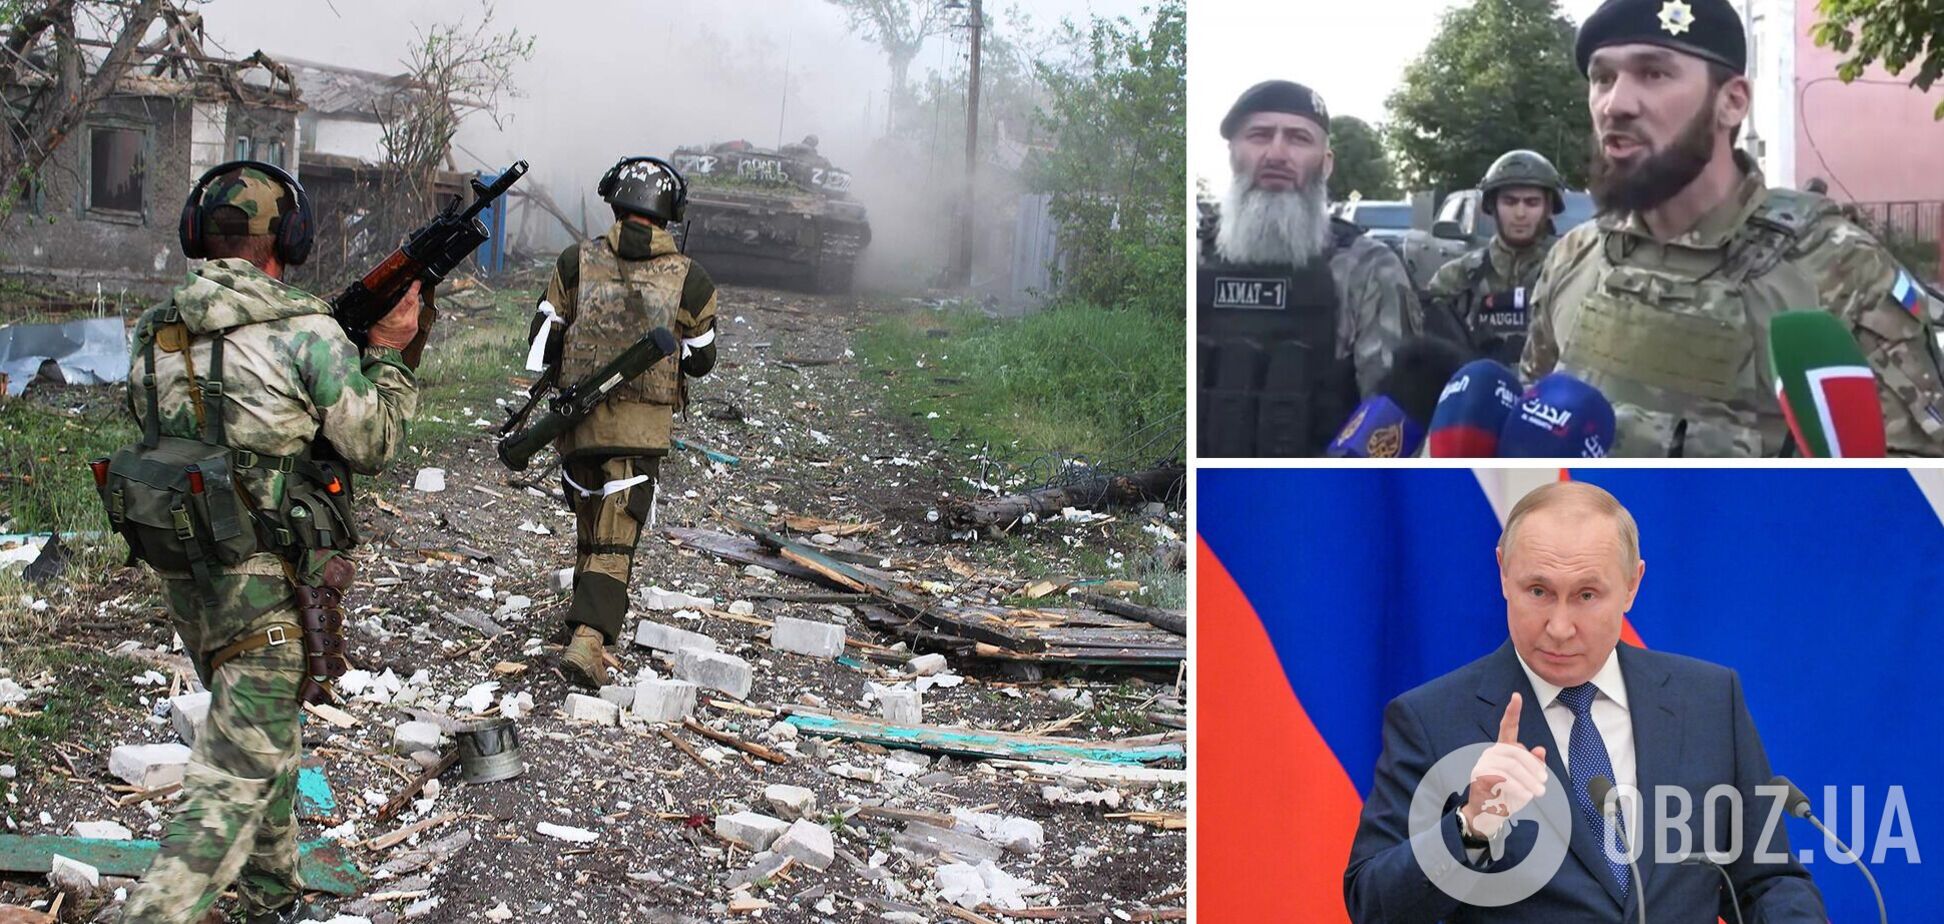 'Защищает ислам': кадыровец выдвинул 'новую версию', почему Путин воюет против Украины. Видео